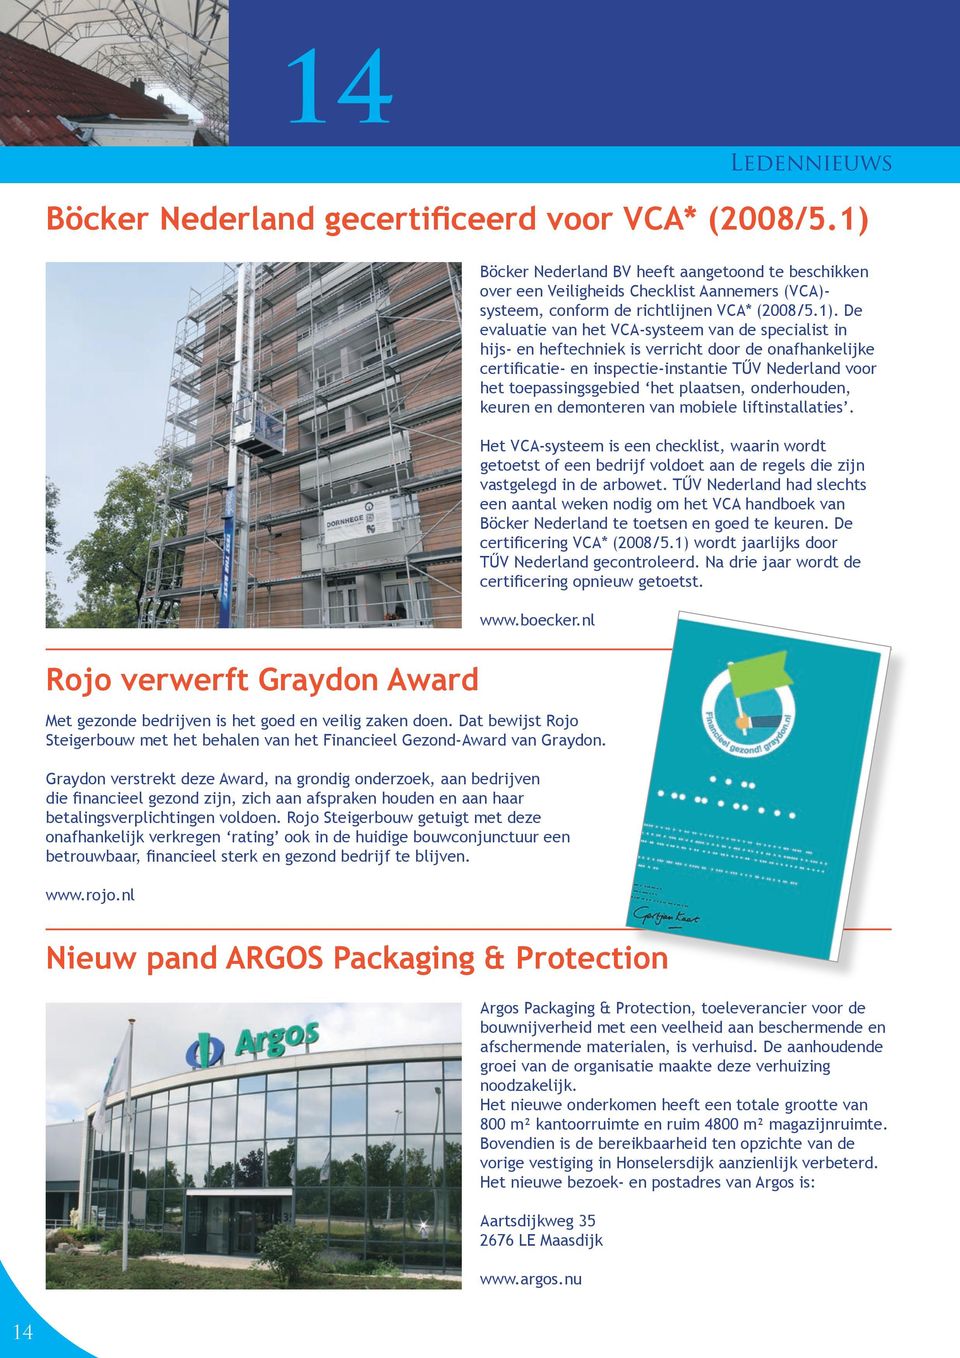 VCA-systeem van de specialist in hijs- en heftechniek is verricht door de onafhankelijke certificatie- en inspectie-instantie TŰV Nederland voor het toepassingsgebied het plaatsen, onderhouden,